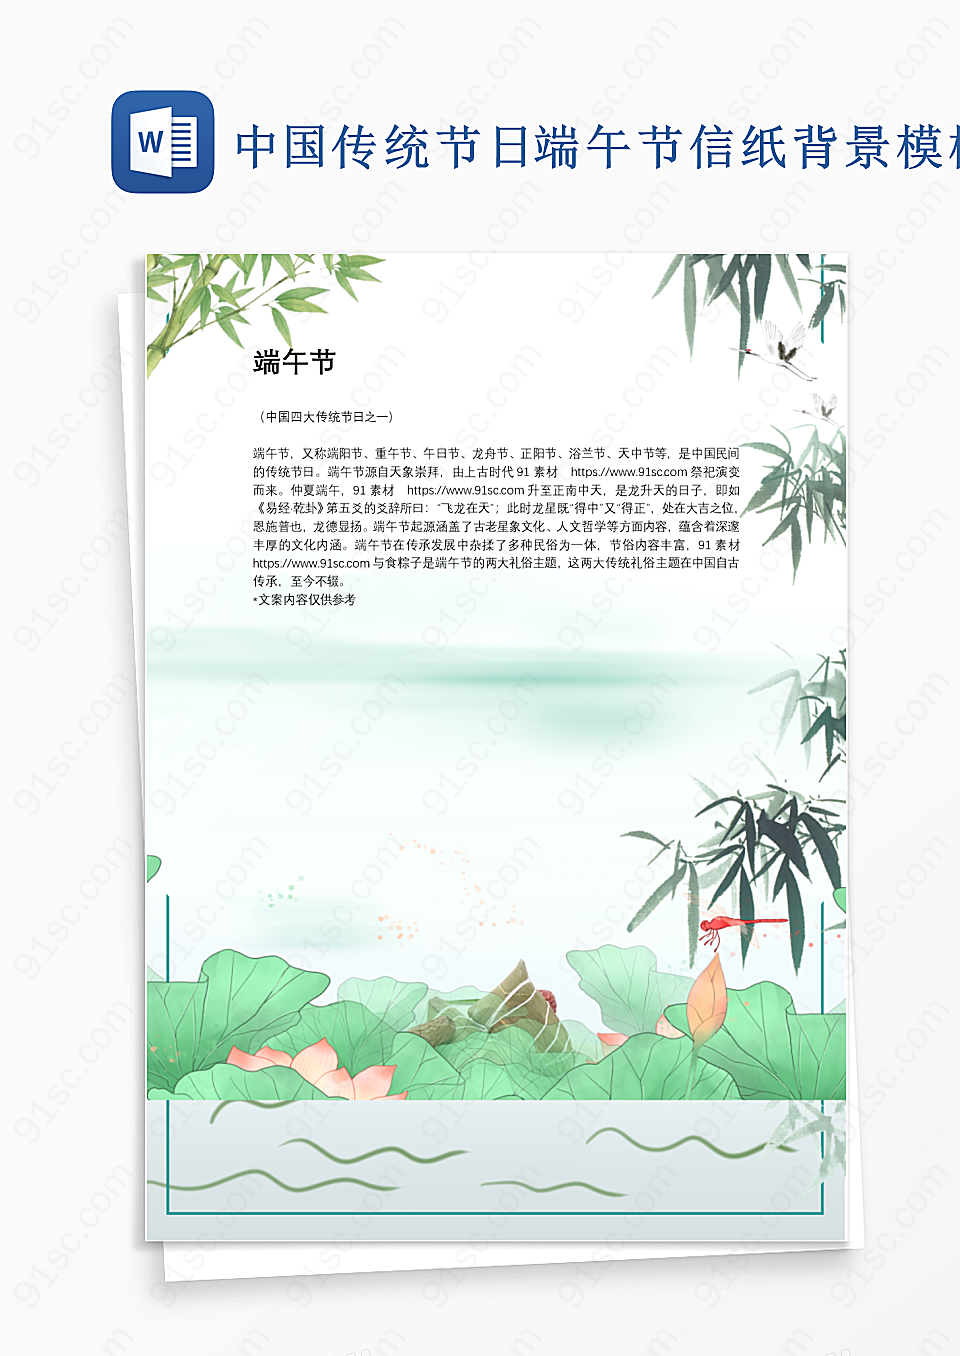 中国传统节日端午节信纸背景模板背景信纸